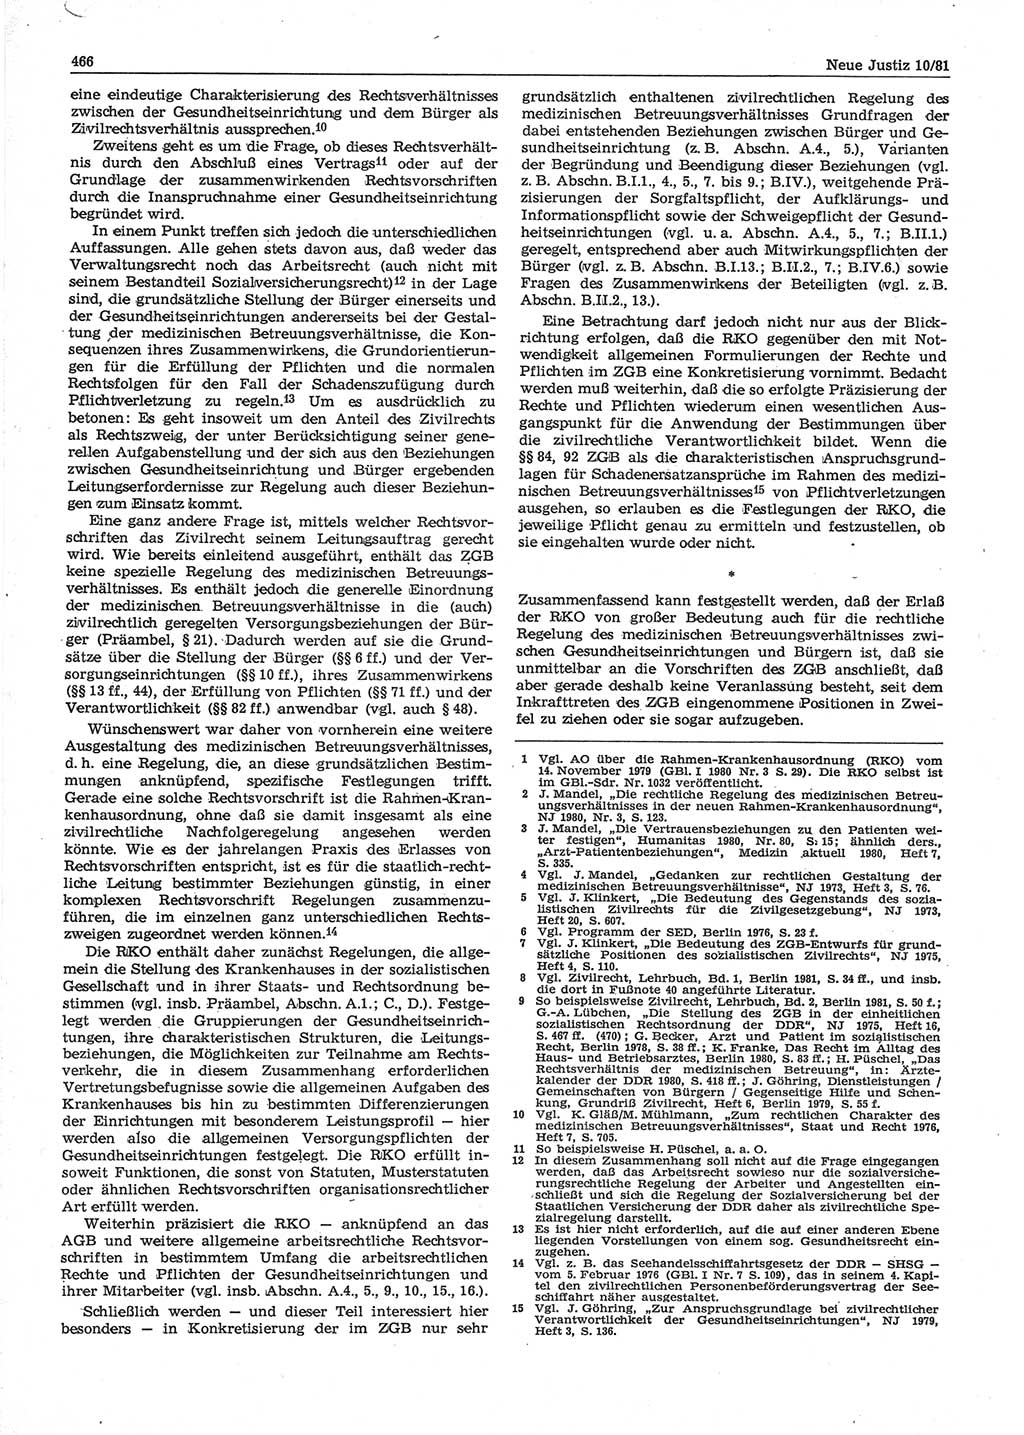 Neue Justiz (NJ), Zeitschrift für sozialistisches Recht und Gesetzlichkeit [Deutsche Demokratische Republik (DDR)], 35. Jahrgang 1981, Seite 466 (NJ DDR 1981, S. 466)